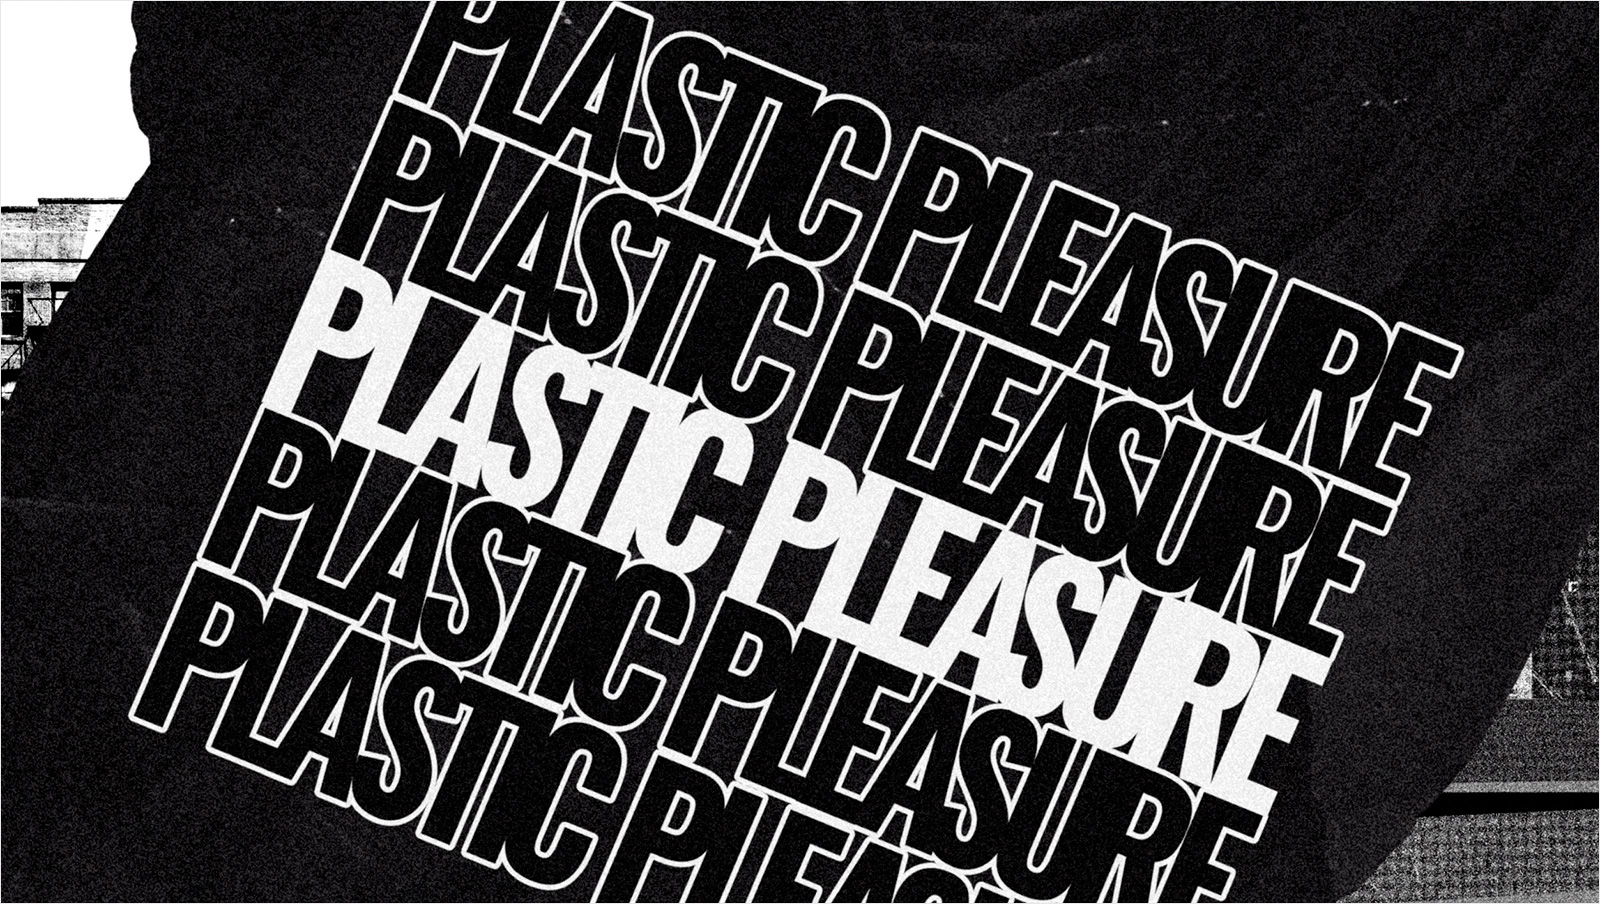 Video Editing: Plastic Pleasure